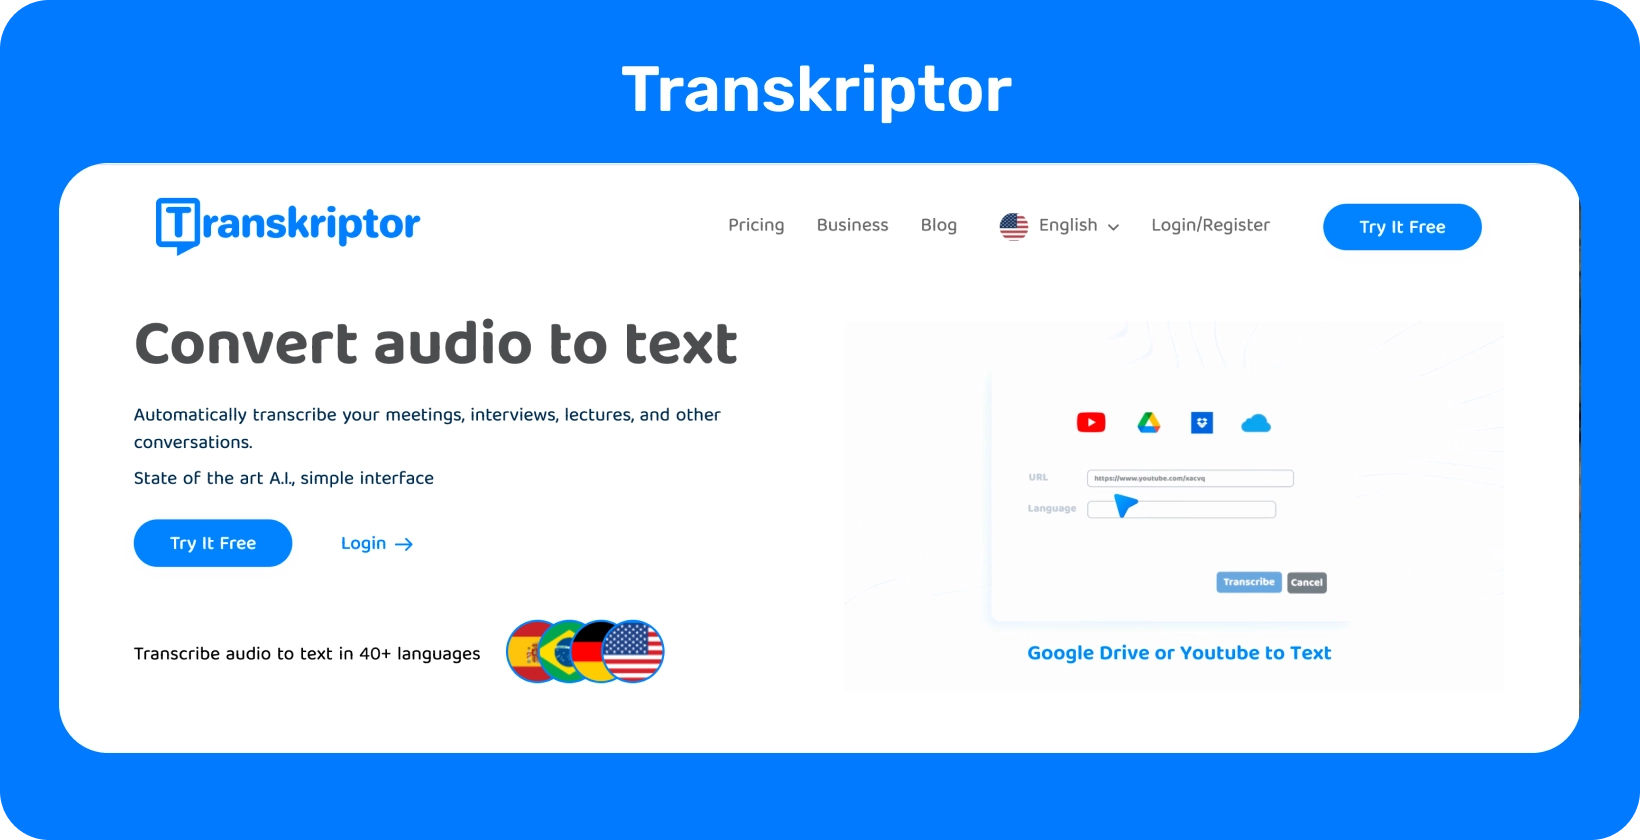 صفحة الويب الخاصة ب Transkriptor تشير إلى ميزة "تحويل الصوت إلى نص" ، وهي جاهزة للنسخ السهل.